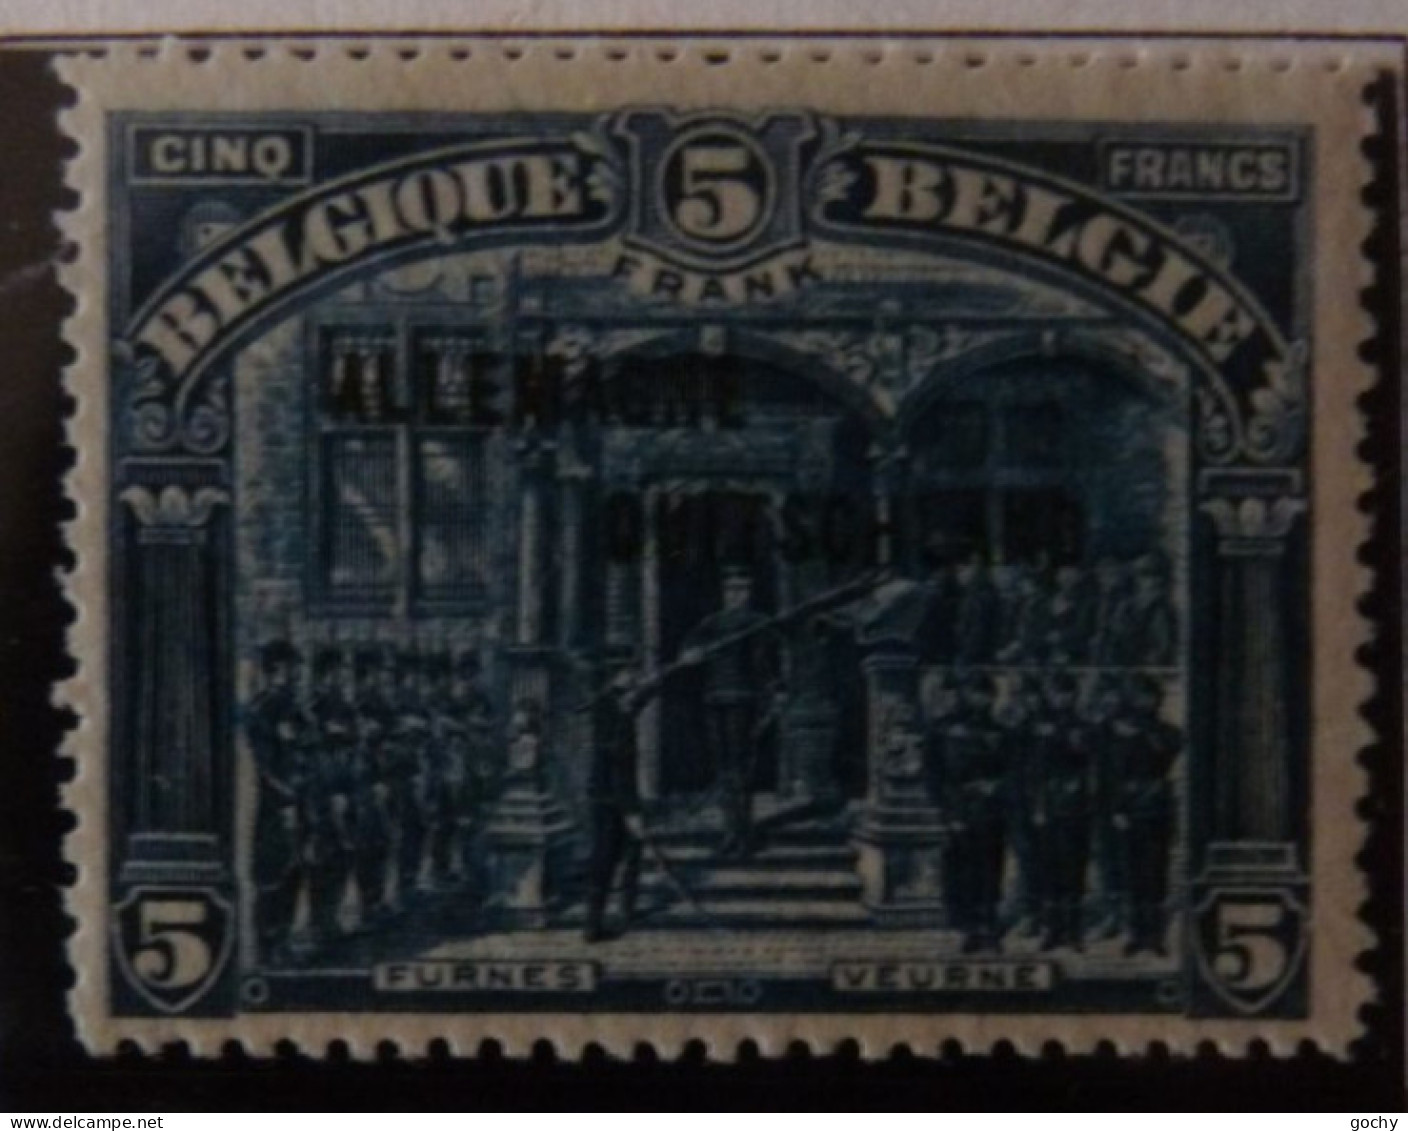 BELGIUM :   1919  - OCCUPATION   OC 38 à 54    */** .  COTE: 418,00€  (54**) - OC38/54 Occupazione Belga In Germania